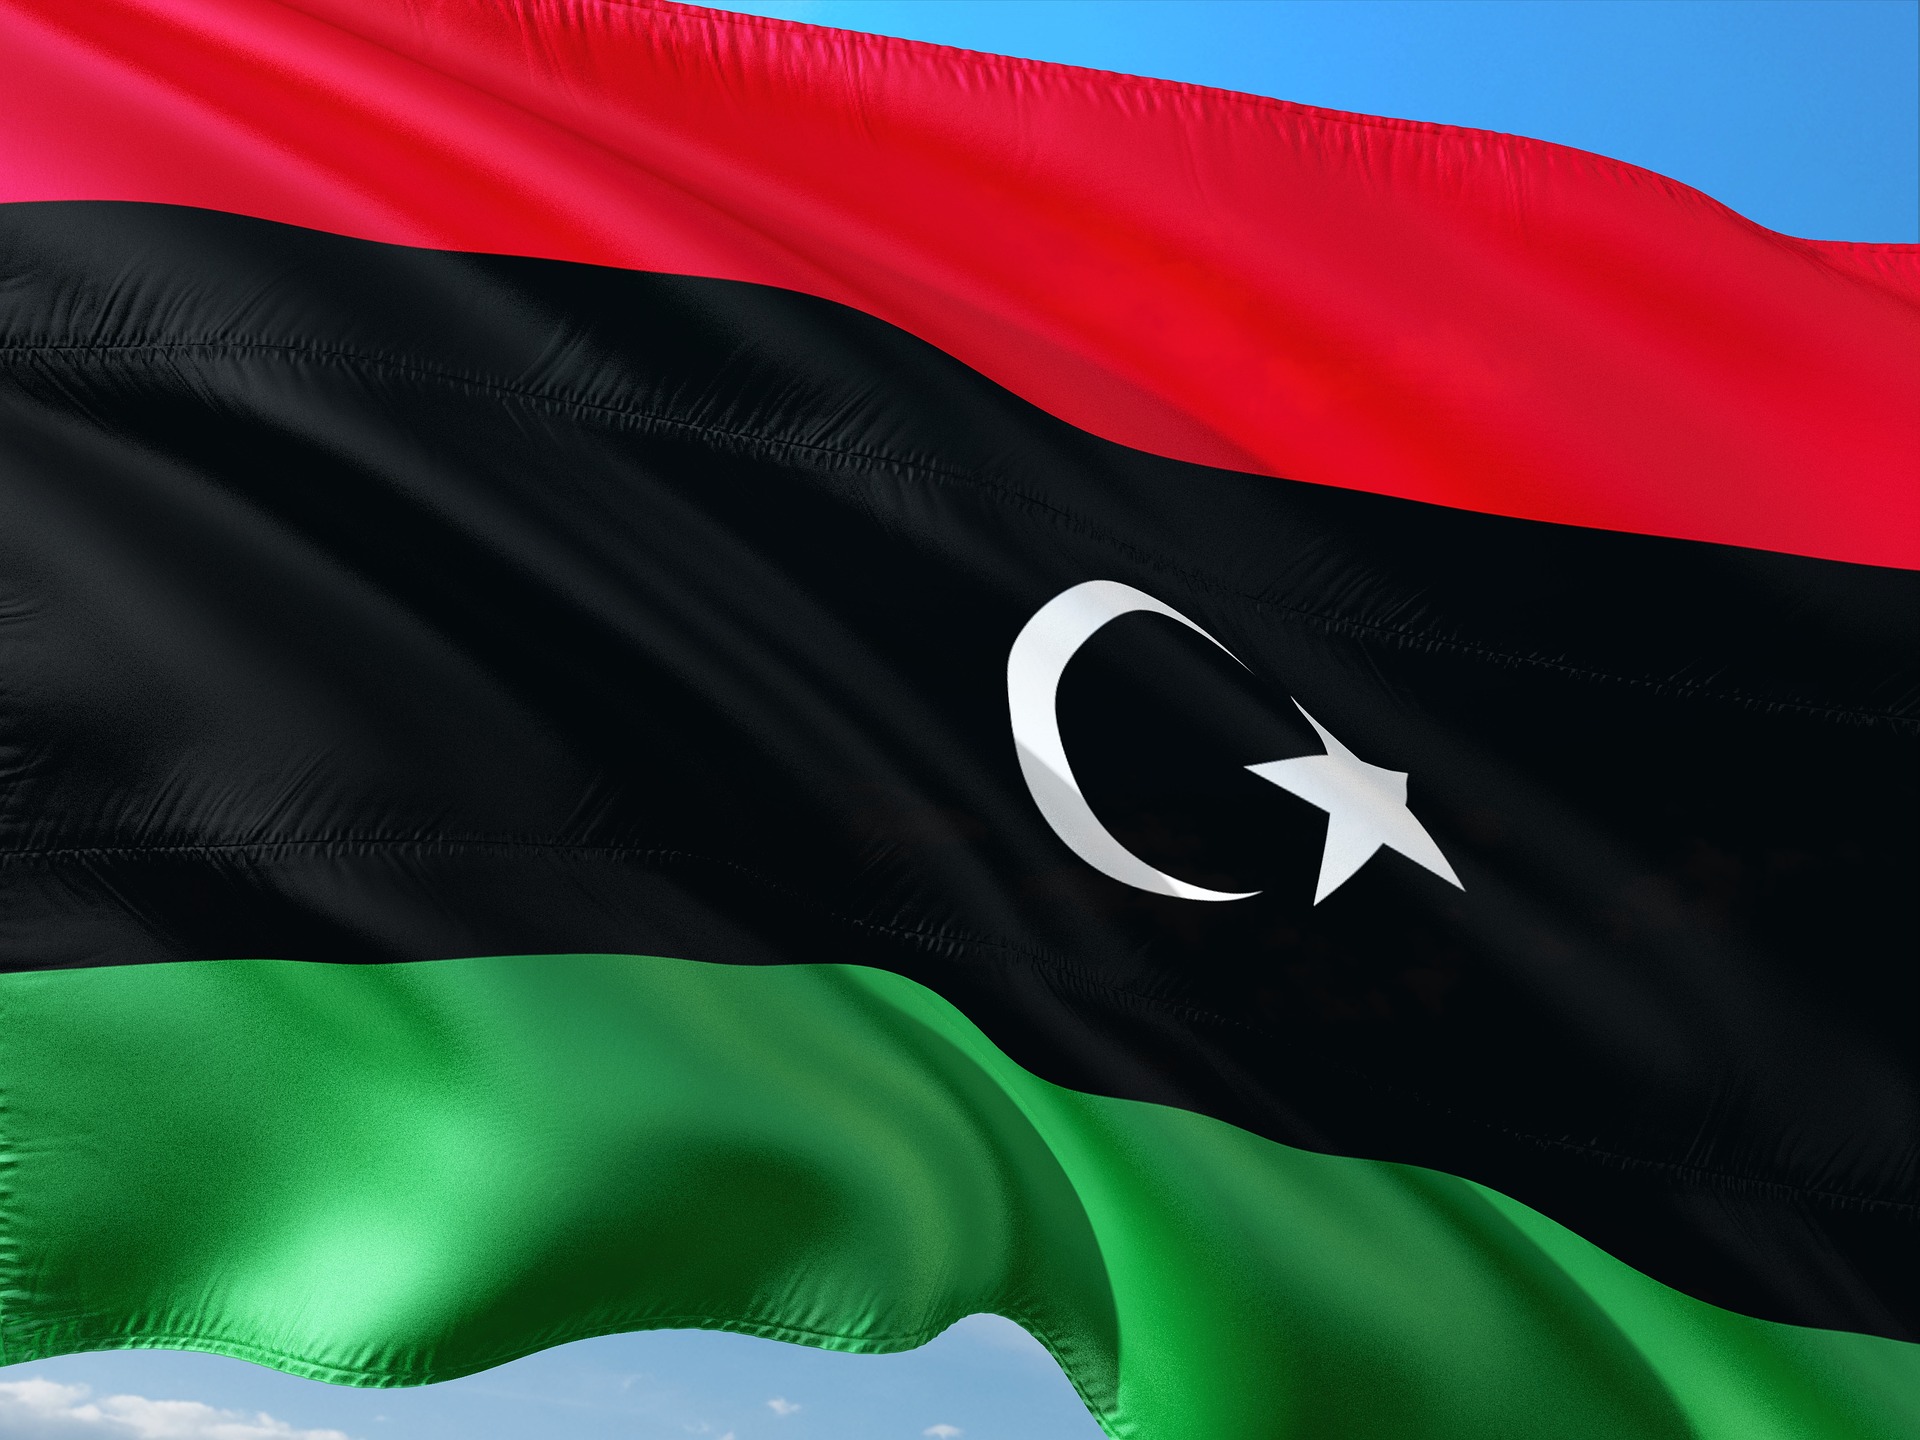 El Programa de Repatriación Voluntaria de Libia resulta controvertido